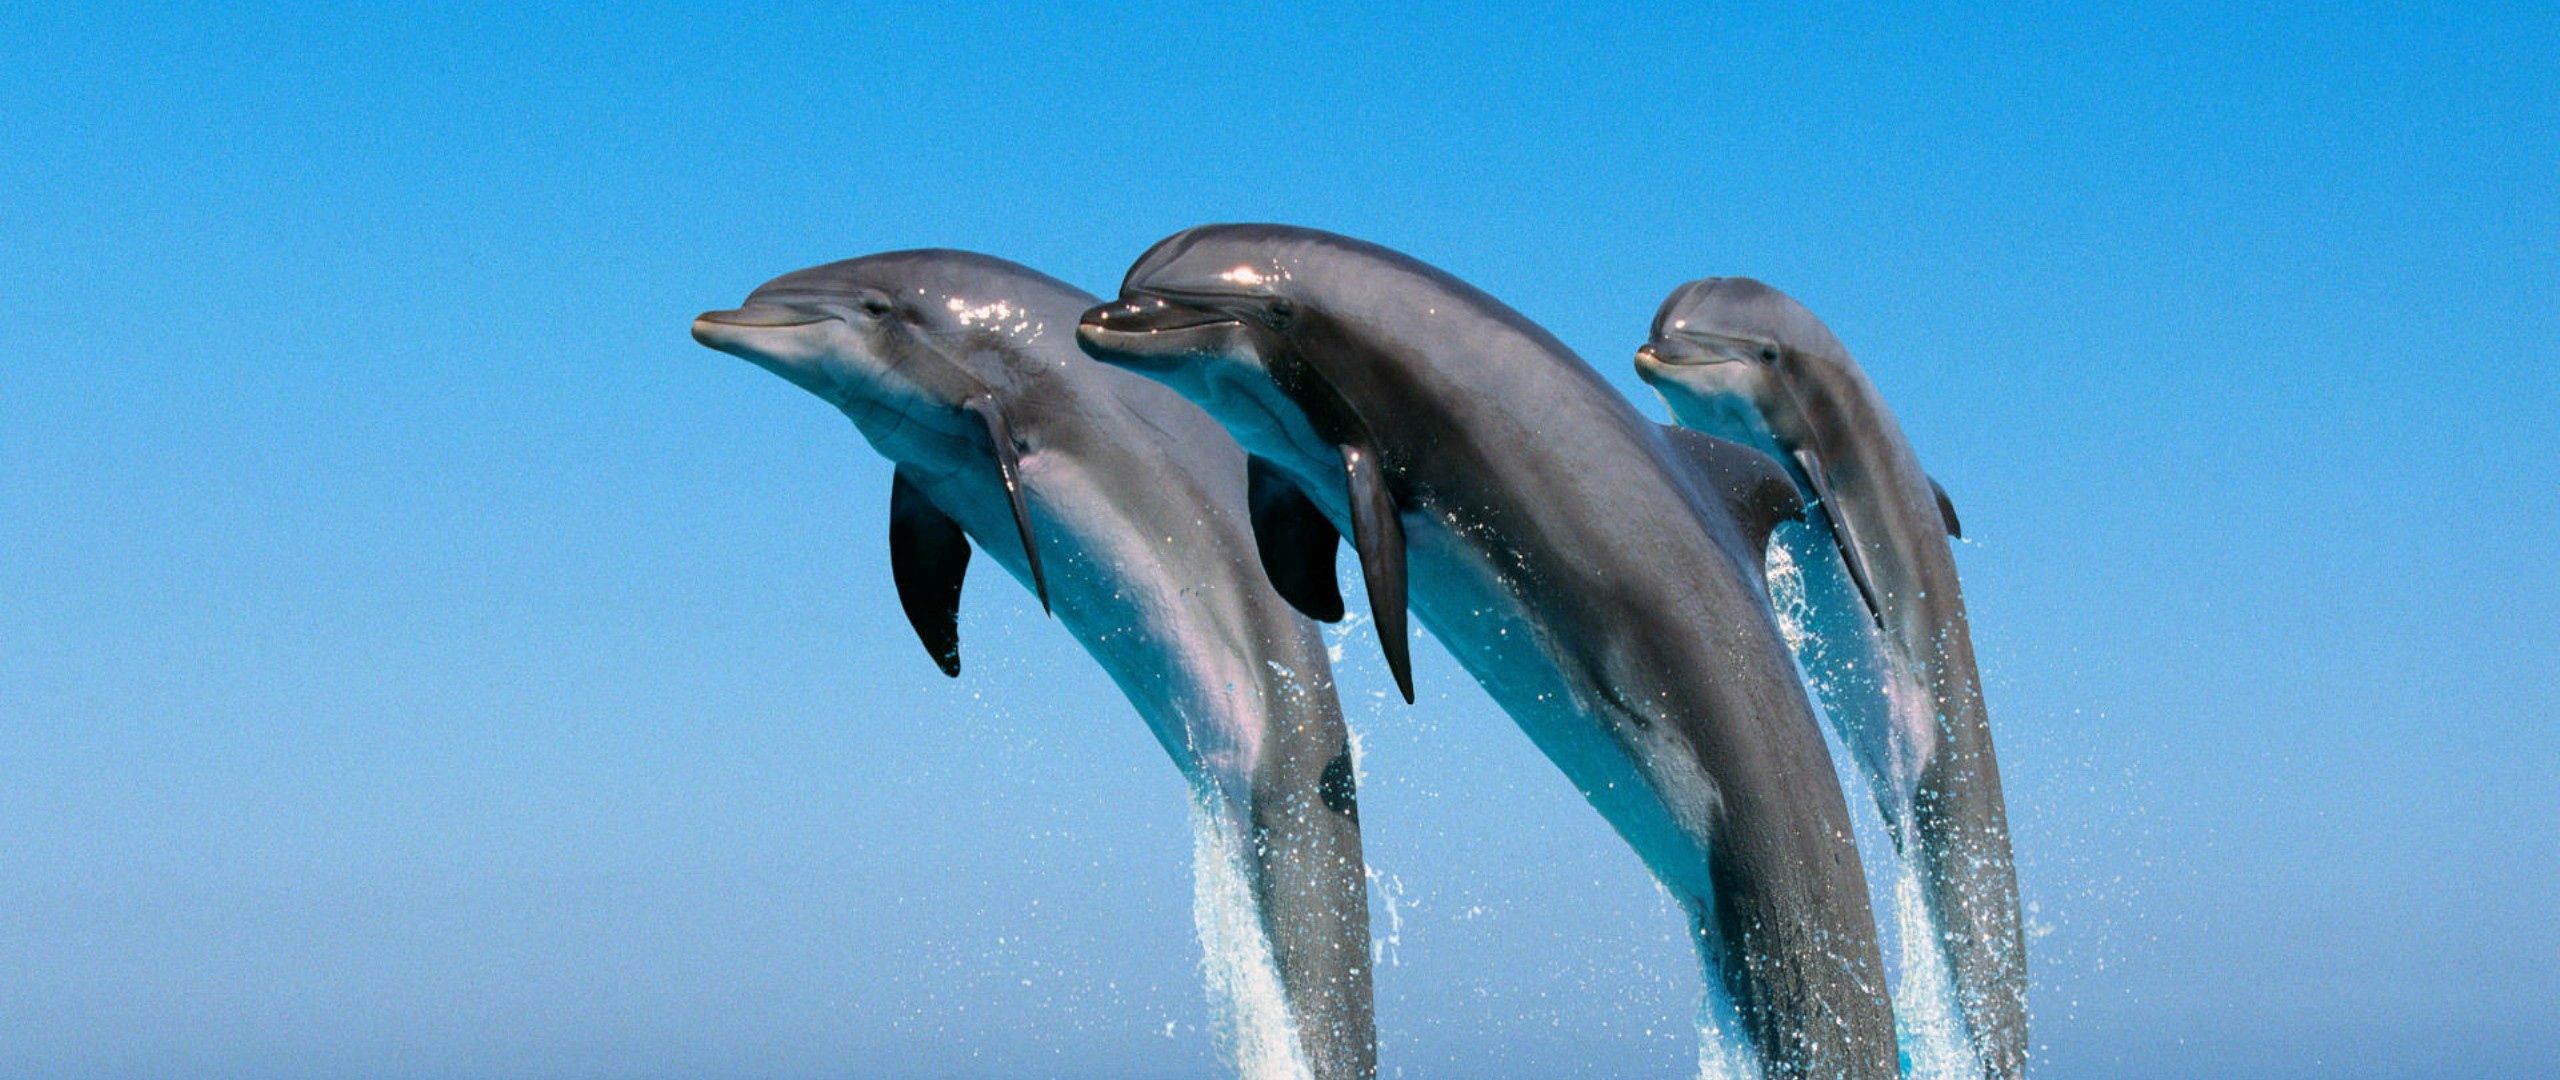 Живая природа дельфины. Дельфины в море. Дельфины фото. Дельфины поют. Фото дельфинов красивые.